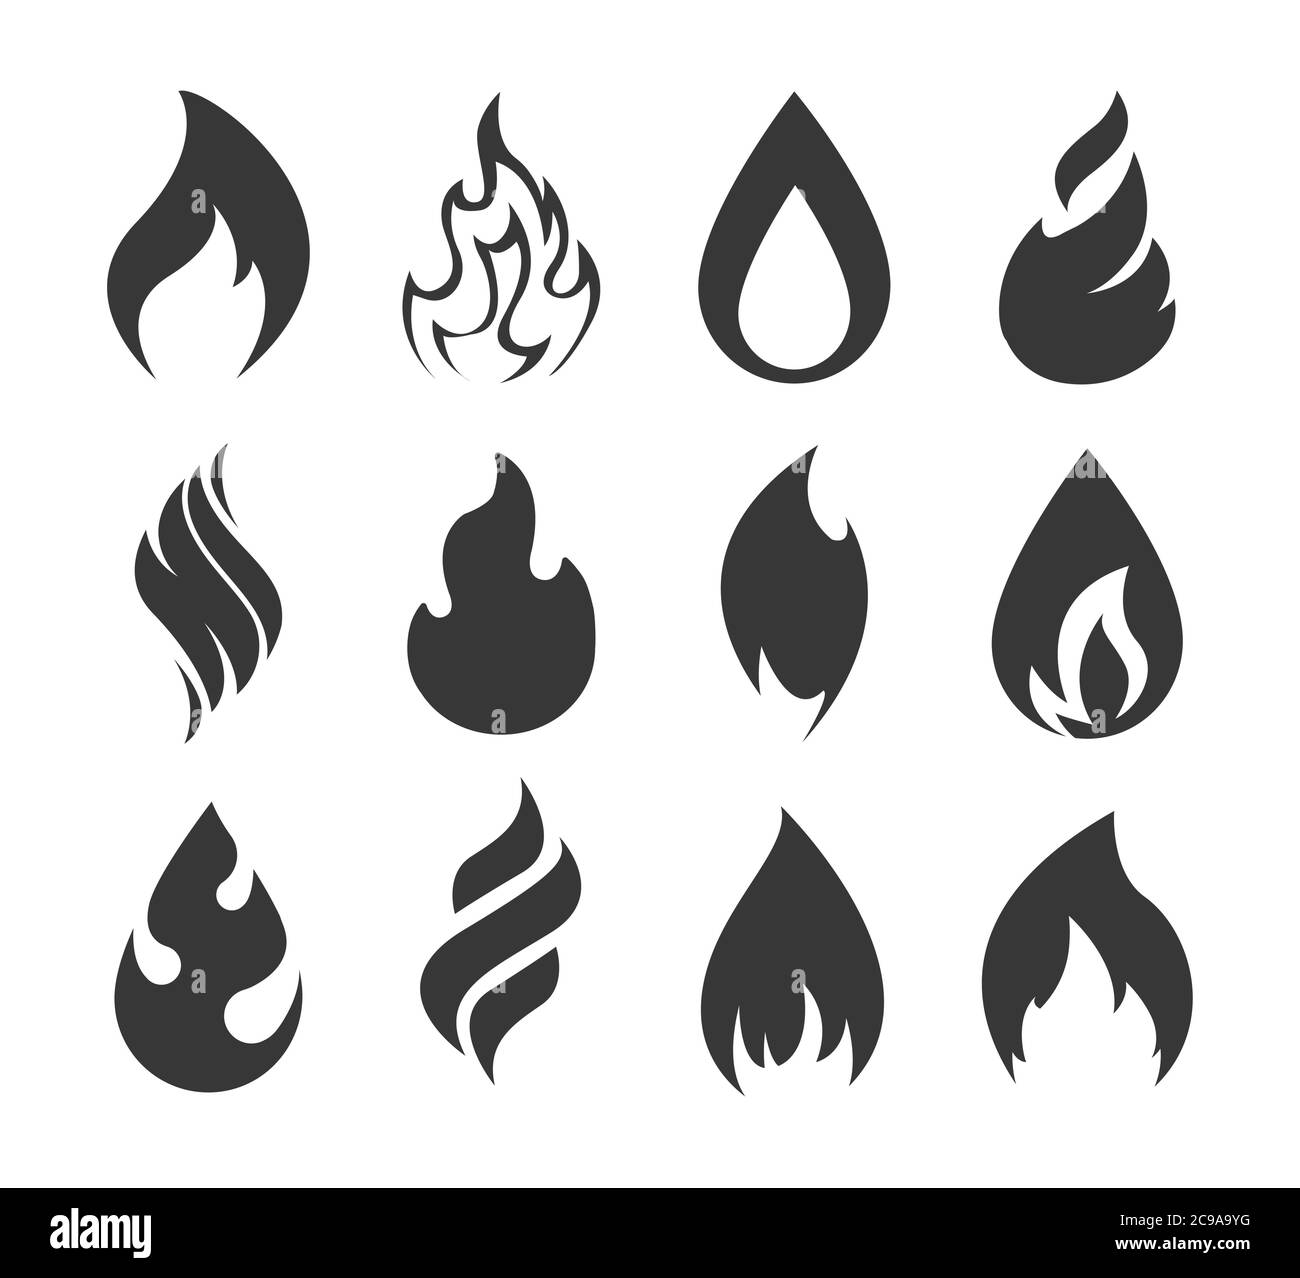 Icona fuoco. Semplici fiamme di fuoco nere isolate su sfondo bianco. Collezione di elementi effetto luce silhouette per il web. Illustrazione vettoriale Illustrazione Vettoriale